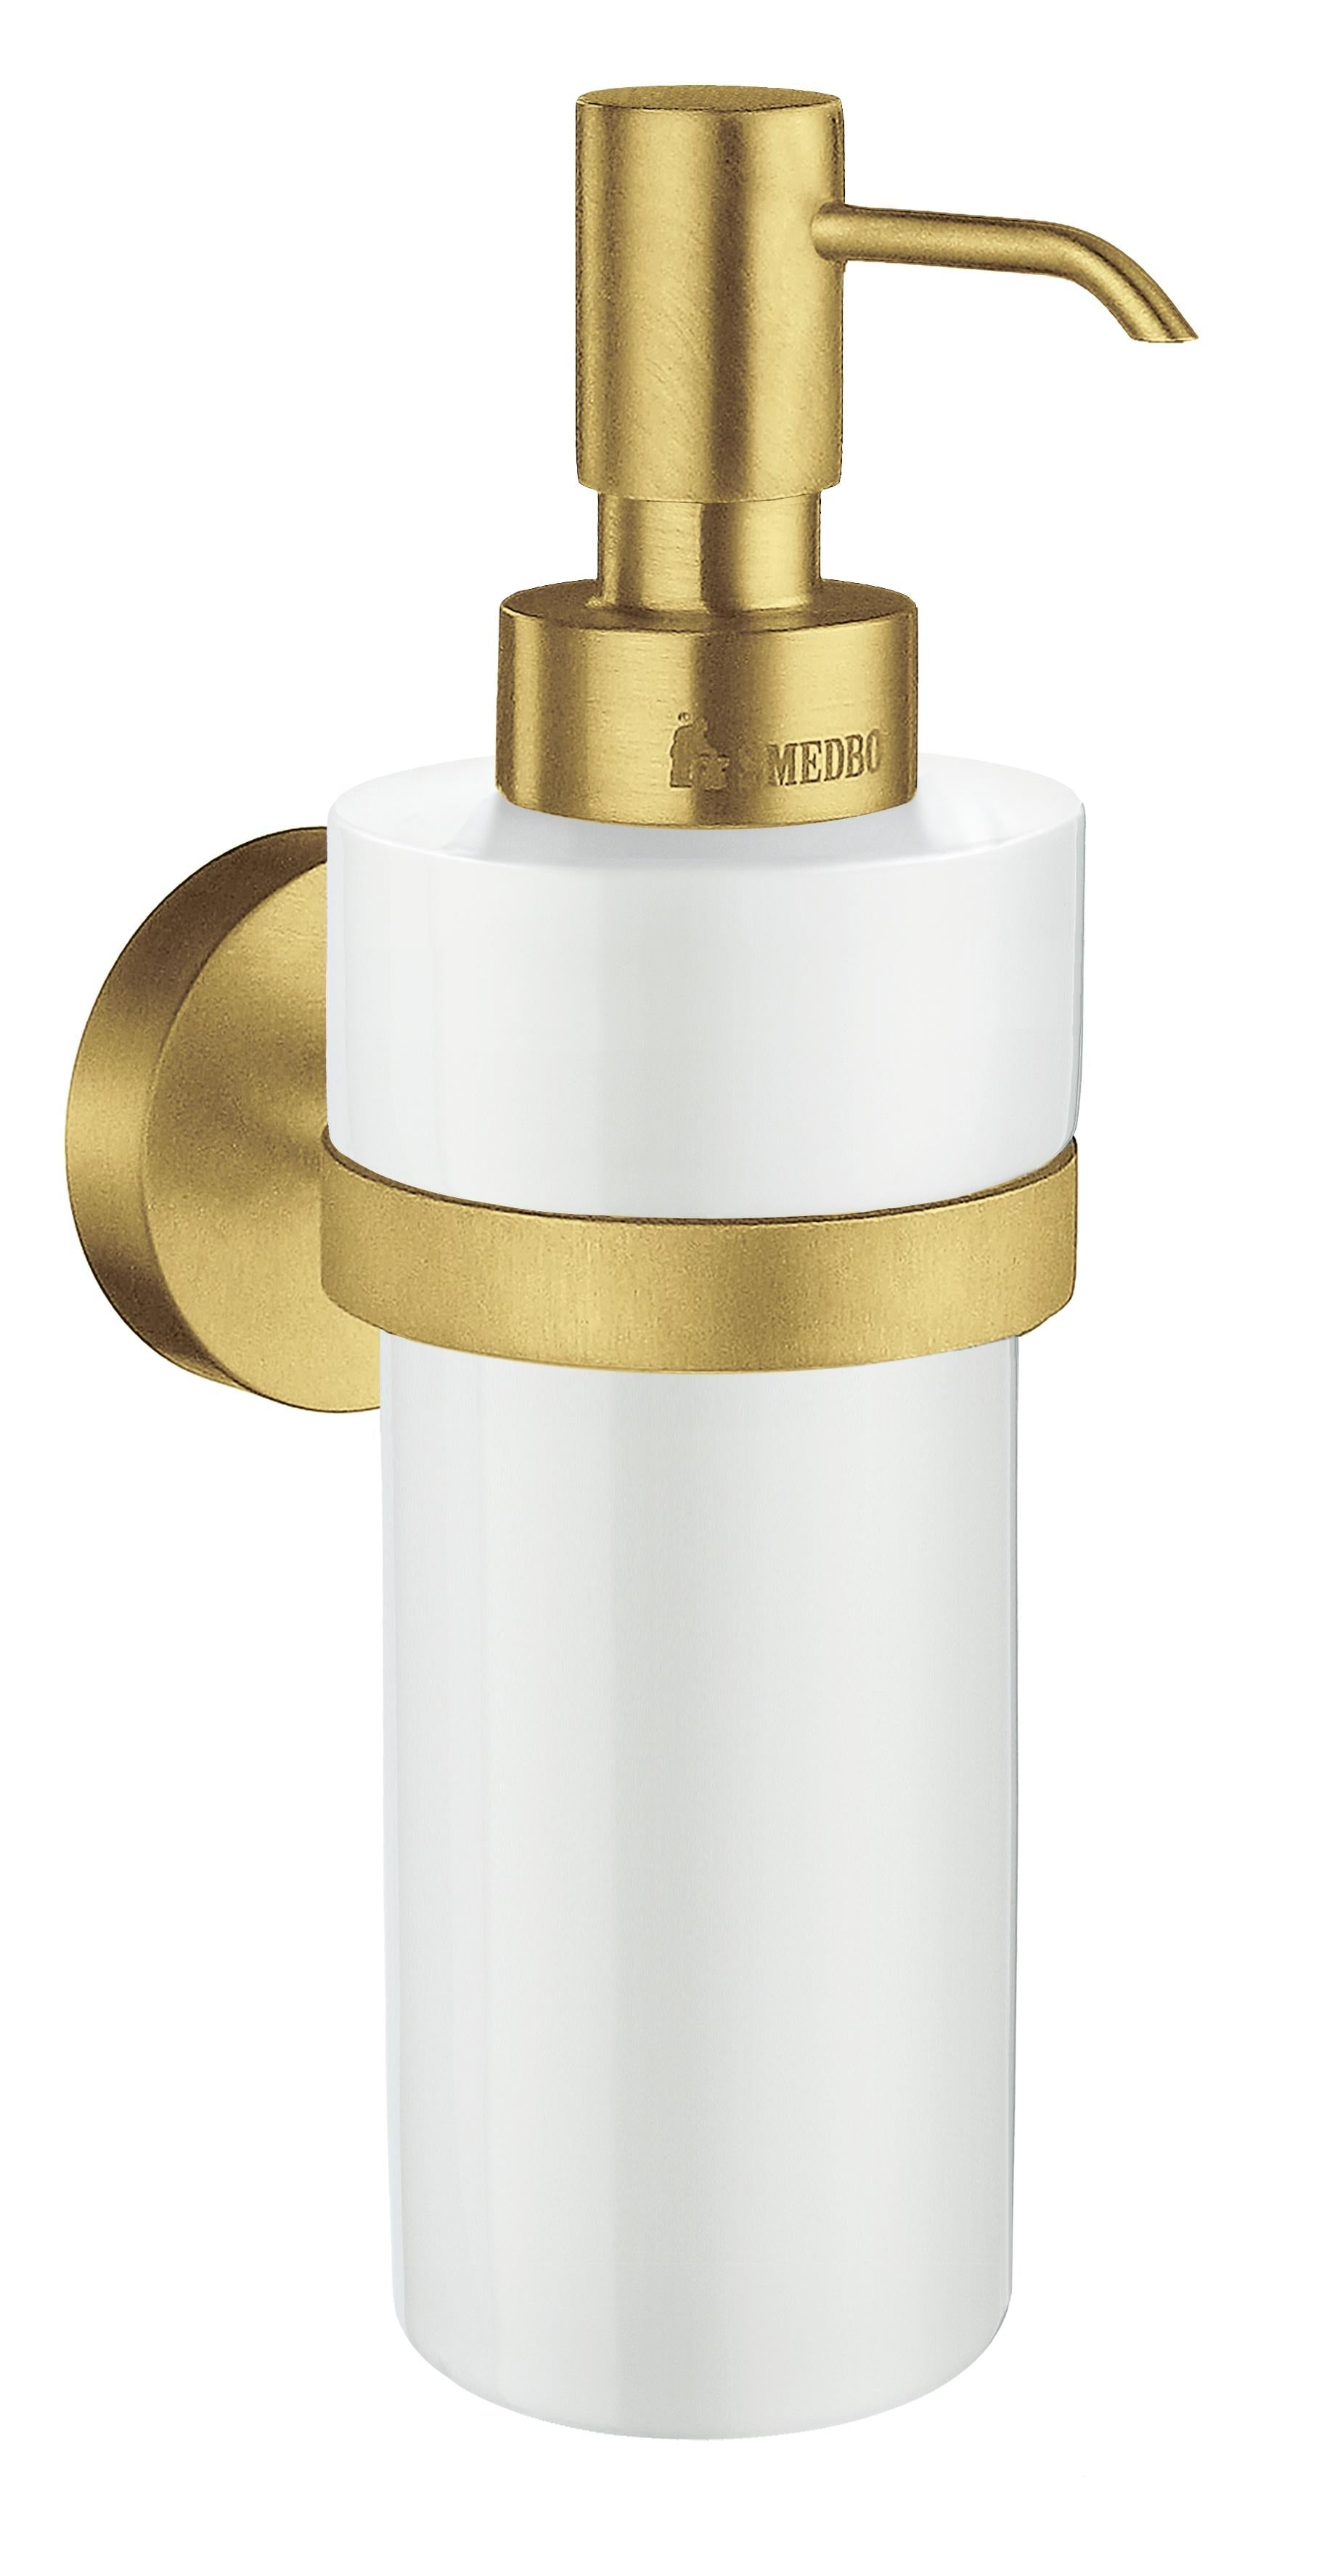 brushed brass/porcelain soap dispenser